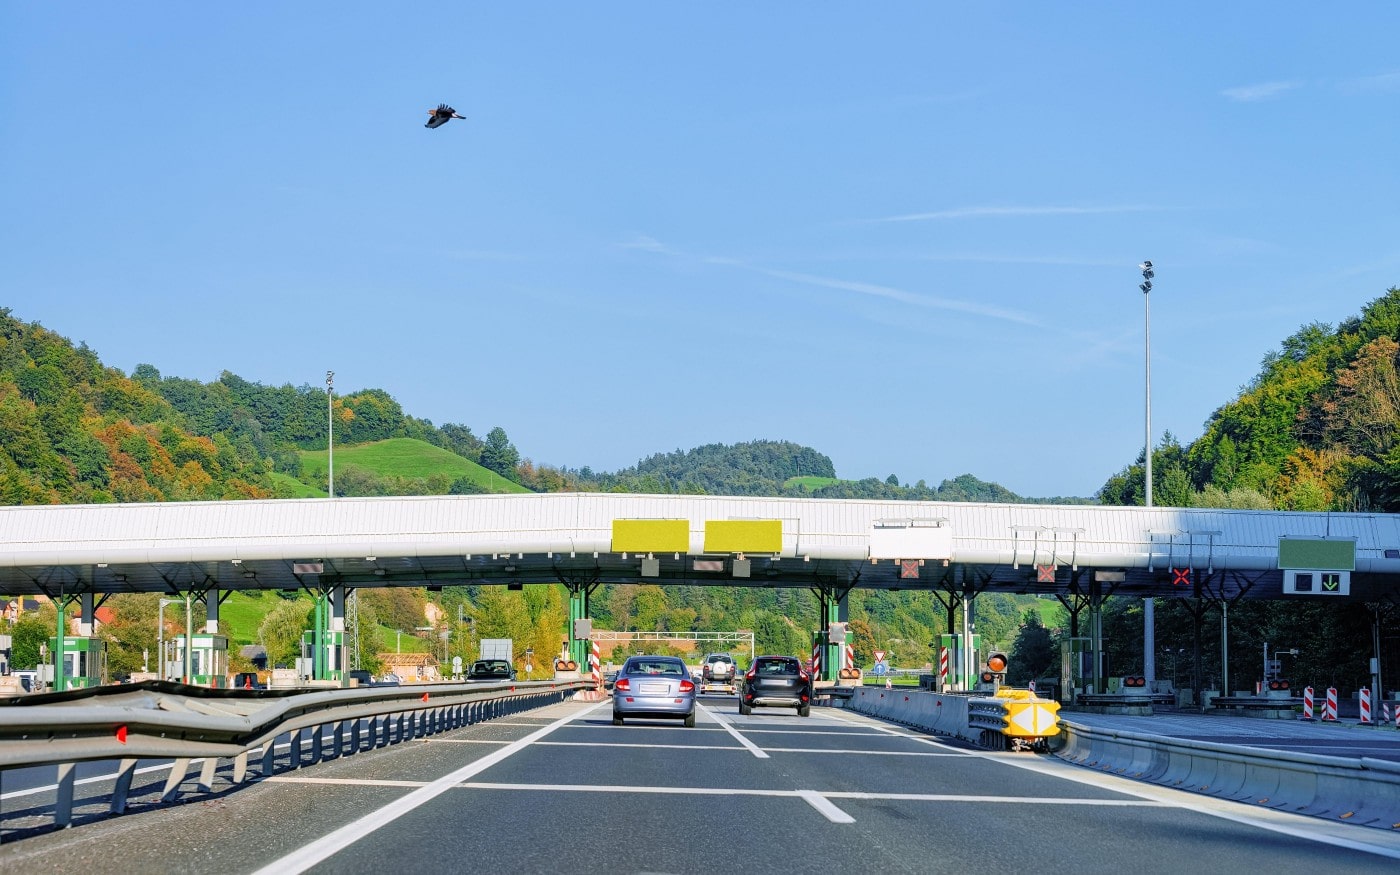 Halten Sie sich in Slowenien auf Autobahnen und in Ortschaften immer an die ausgeschilderten Geschwindigkeitsbegrenzungen